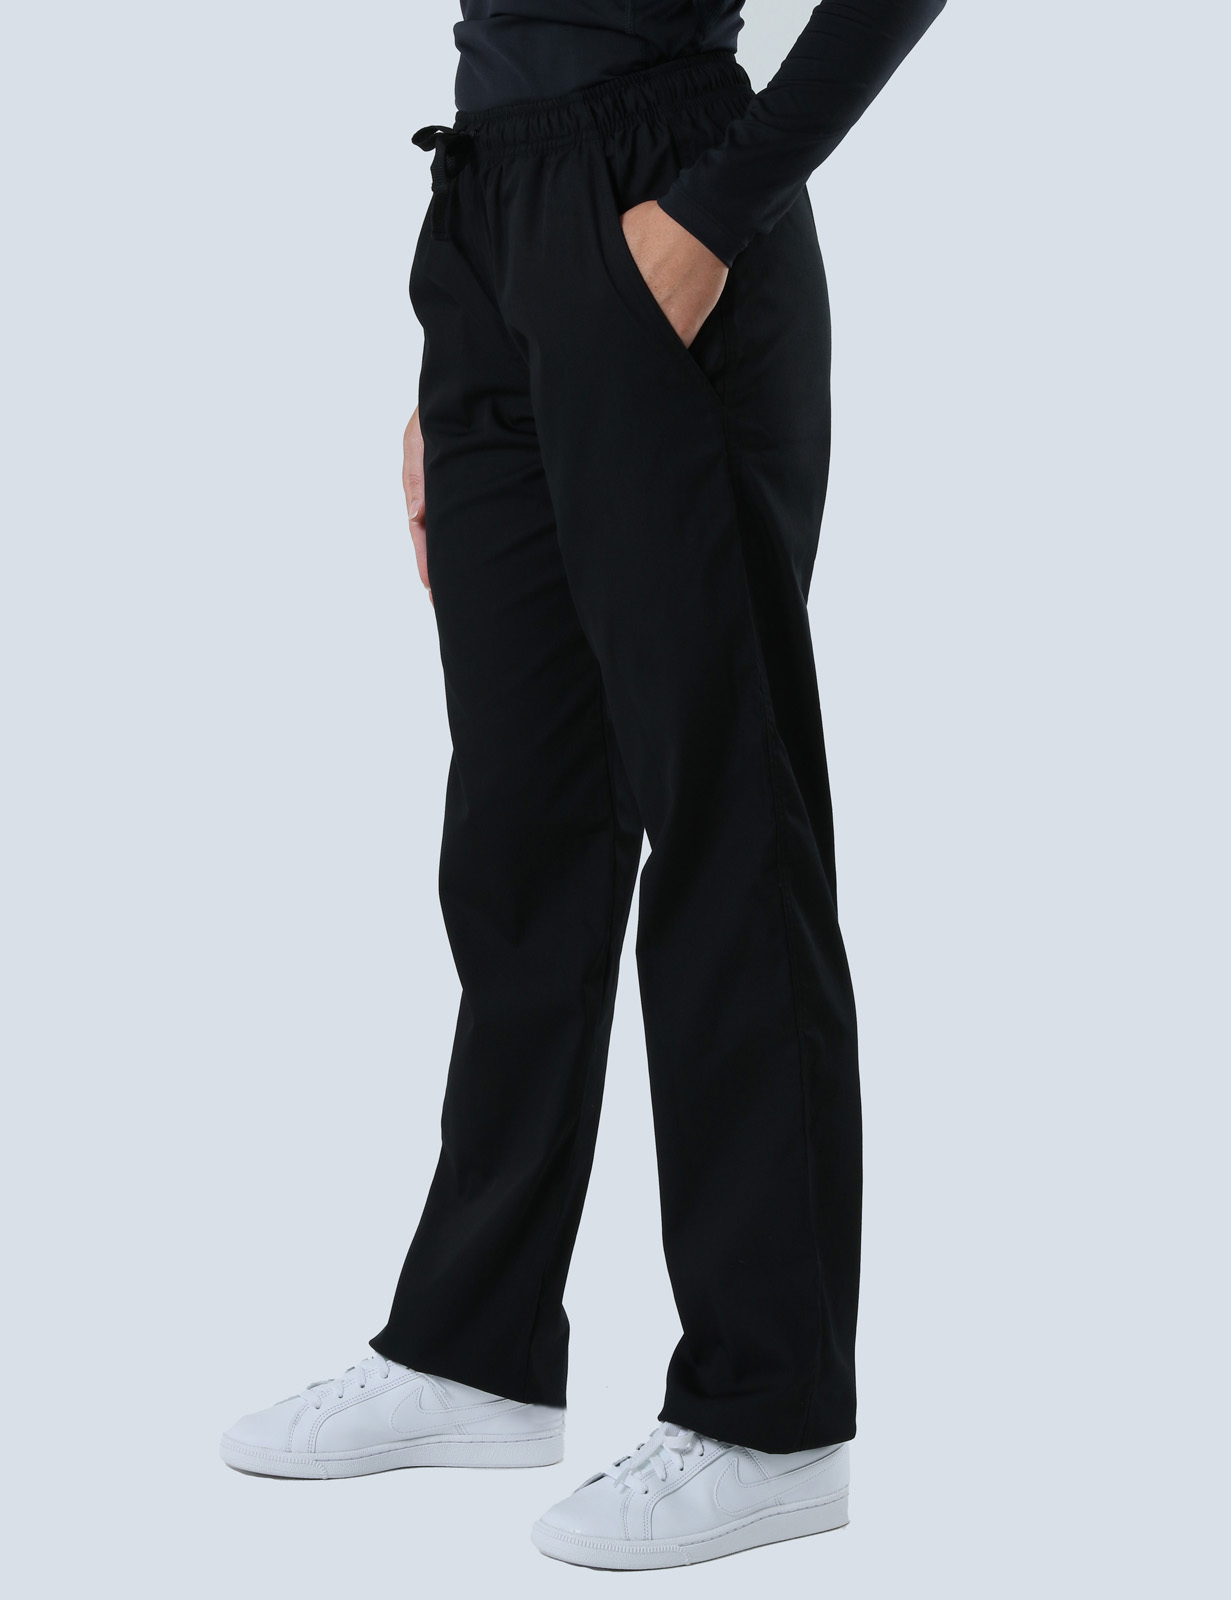 Women's Regular Cut Pants - Black - Medium